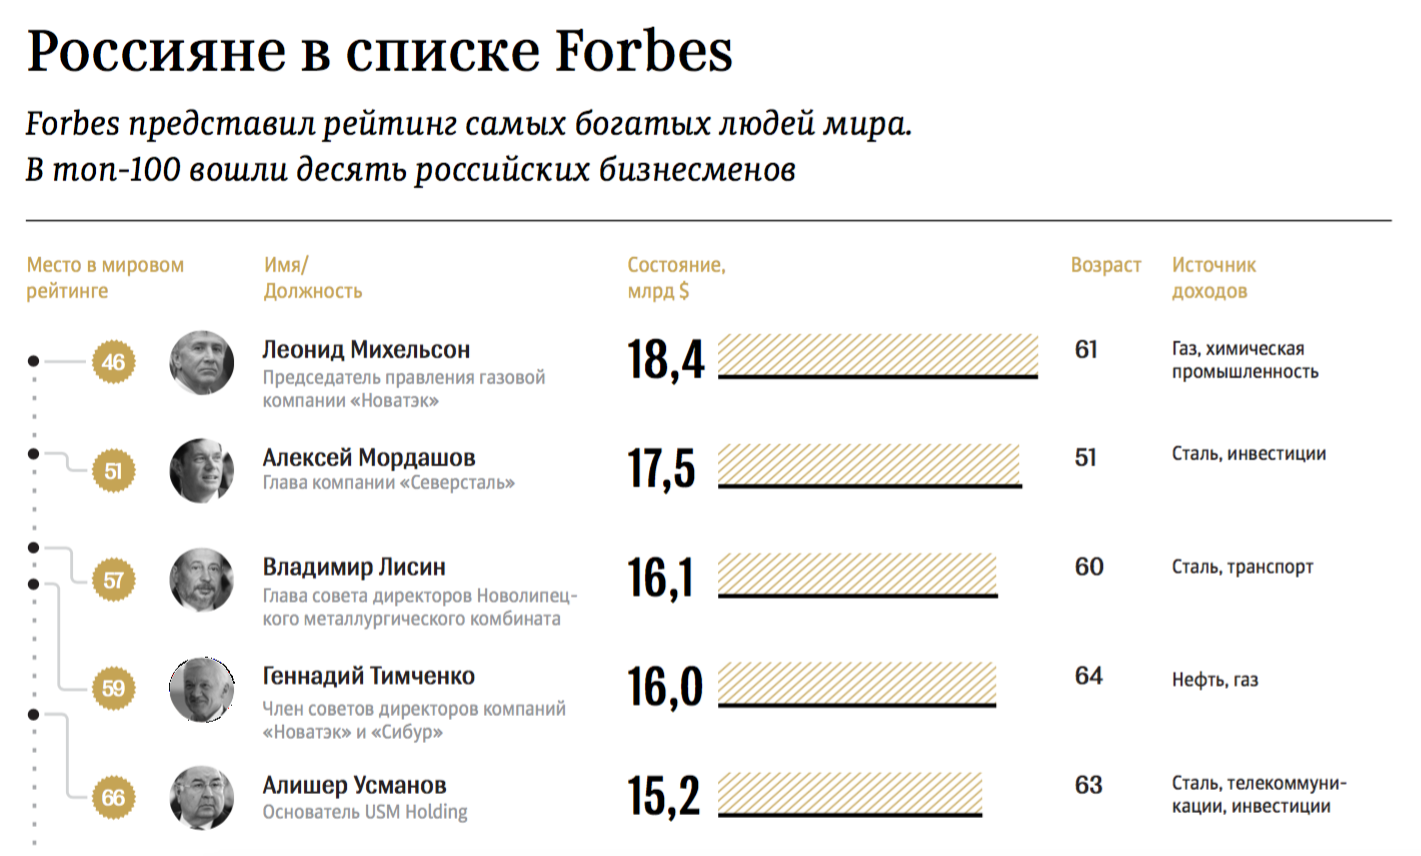 Фото: ©РИА Новости/скриншот с Forbes